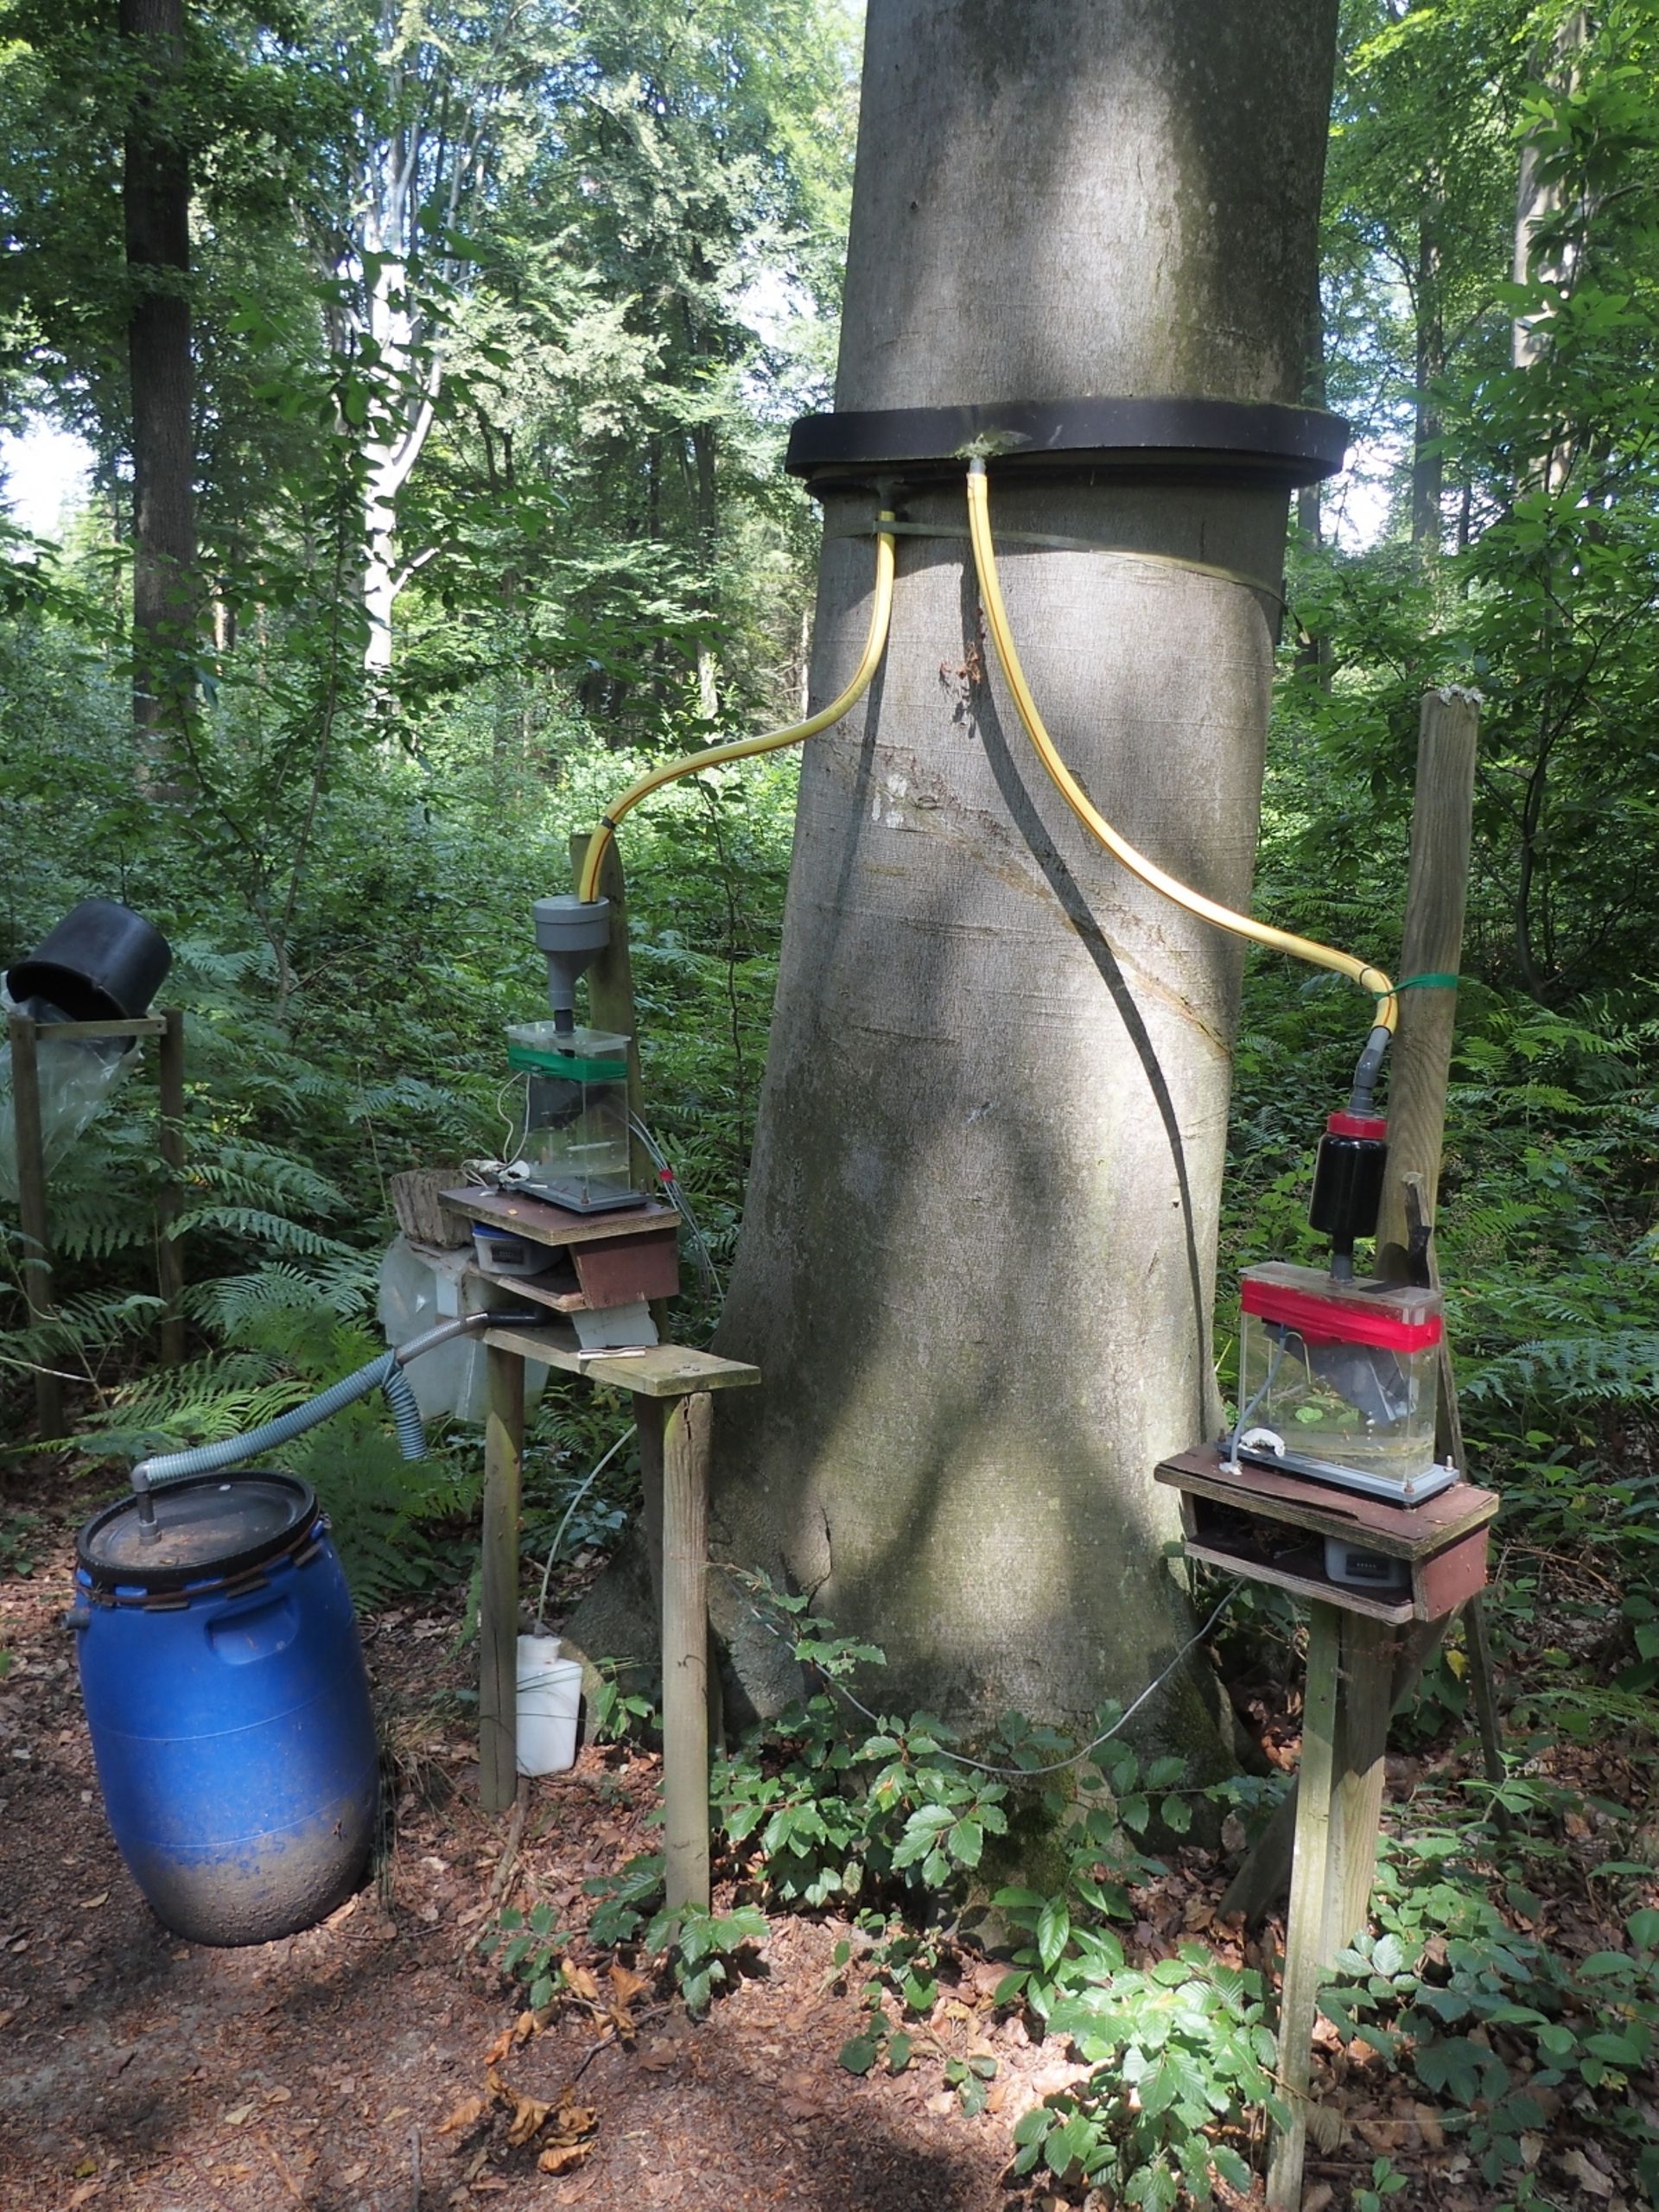 Dispositif permettant de récolter les eaux s’écoulant le long des troncs. Hêtraie située dans le Bois de Lauzelle à Louvain-la-Neuve.